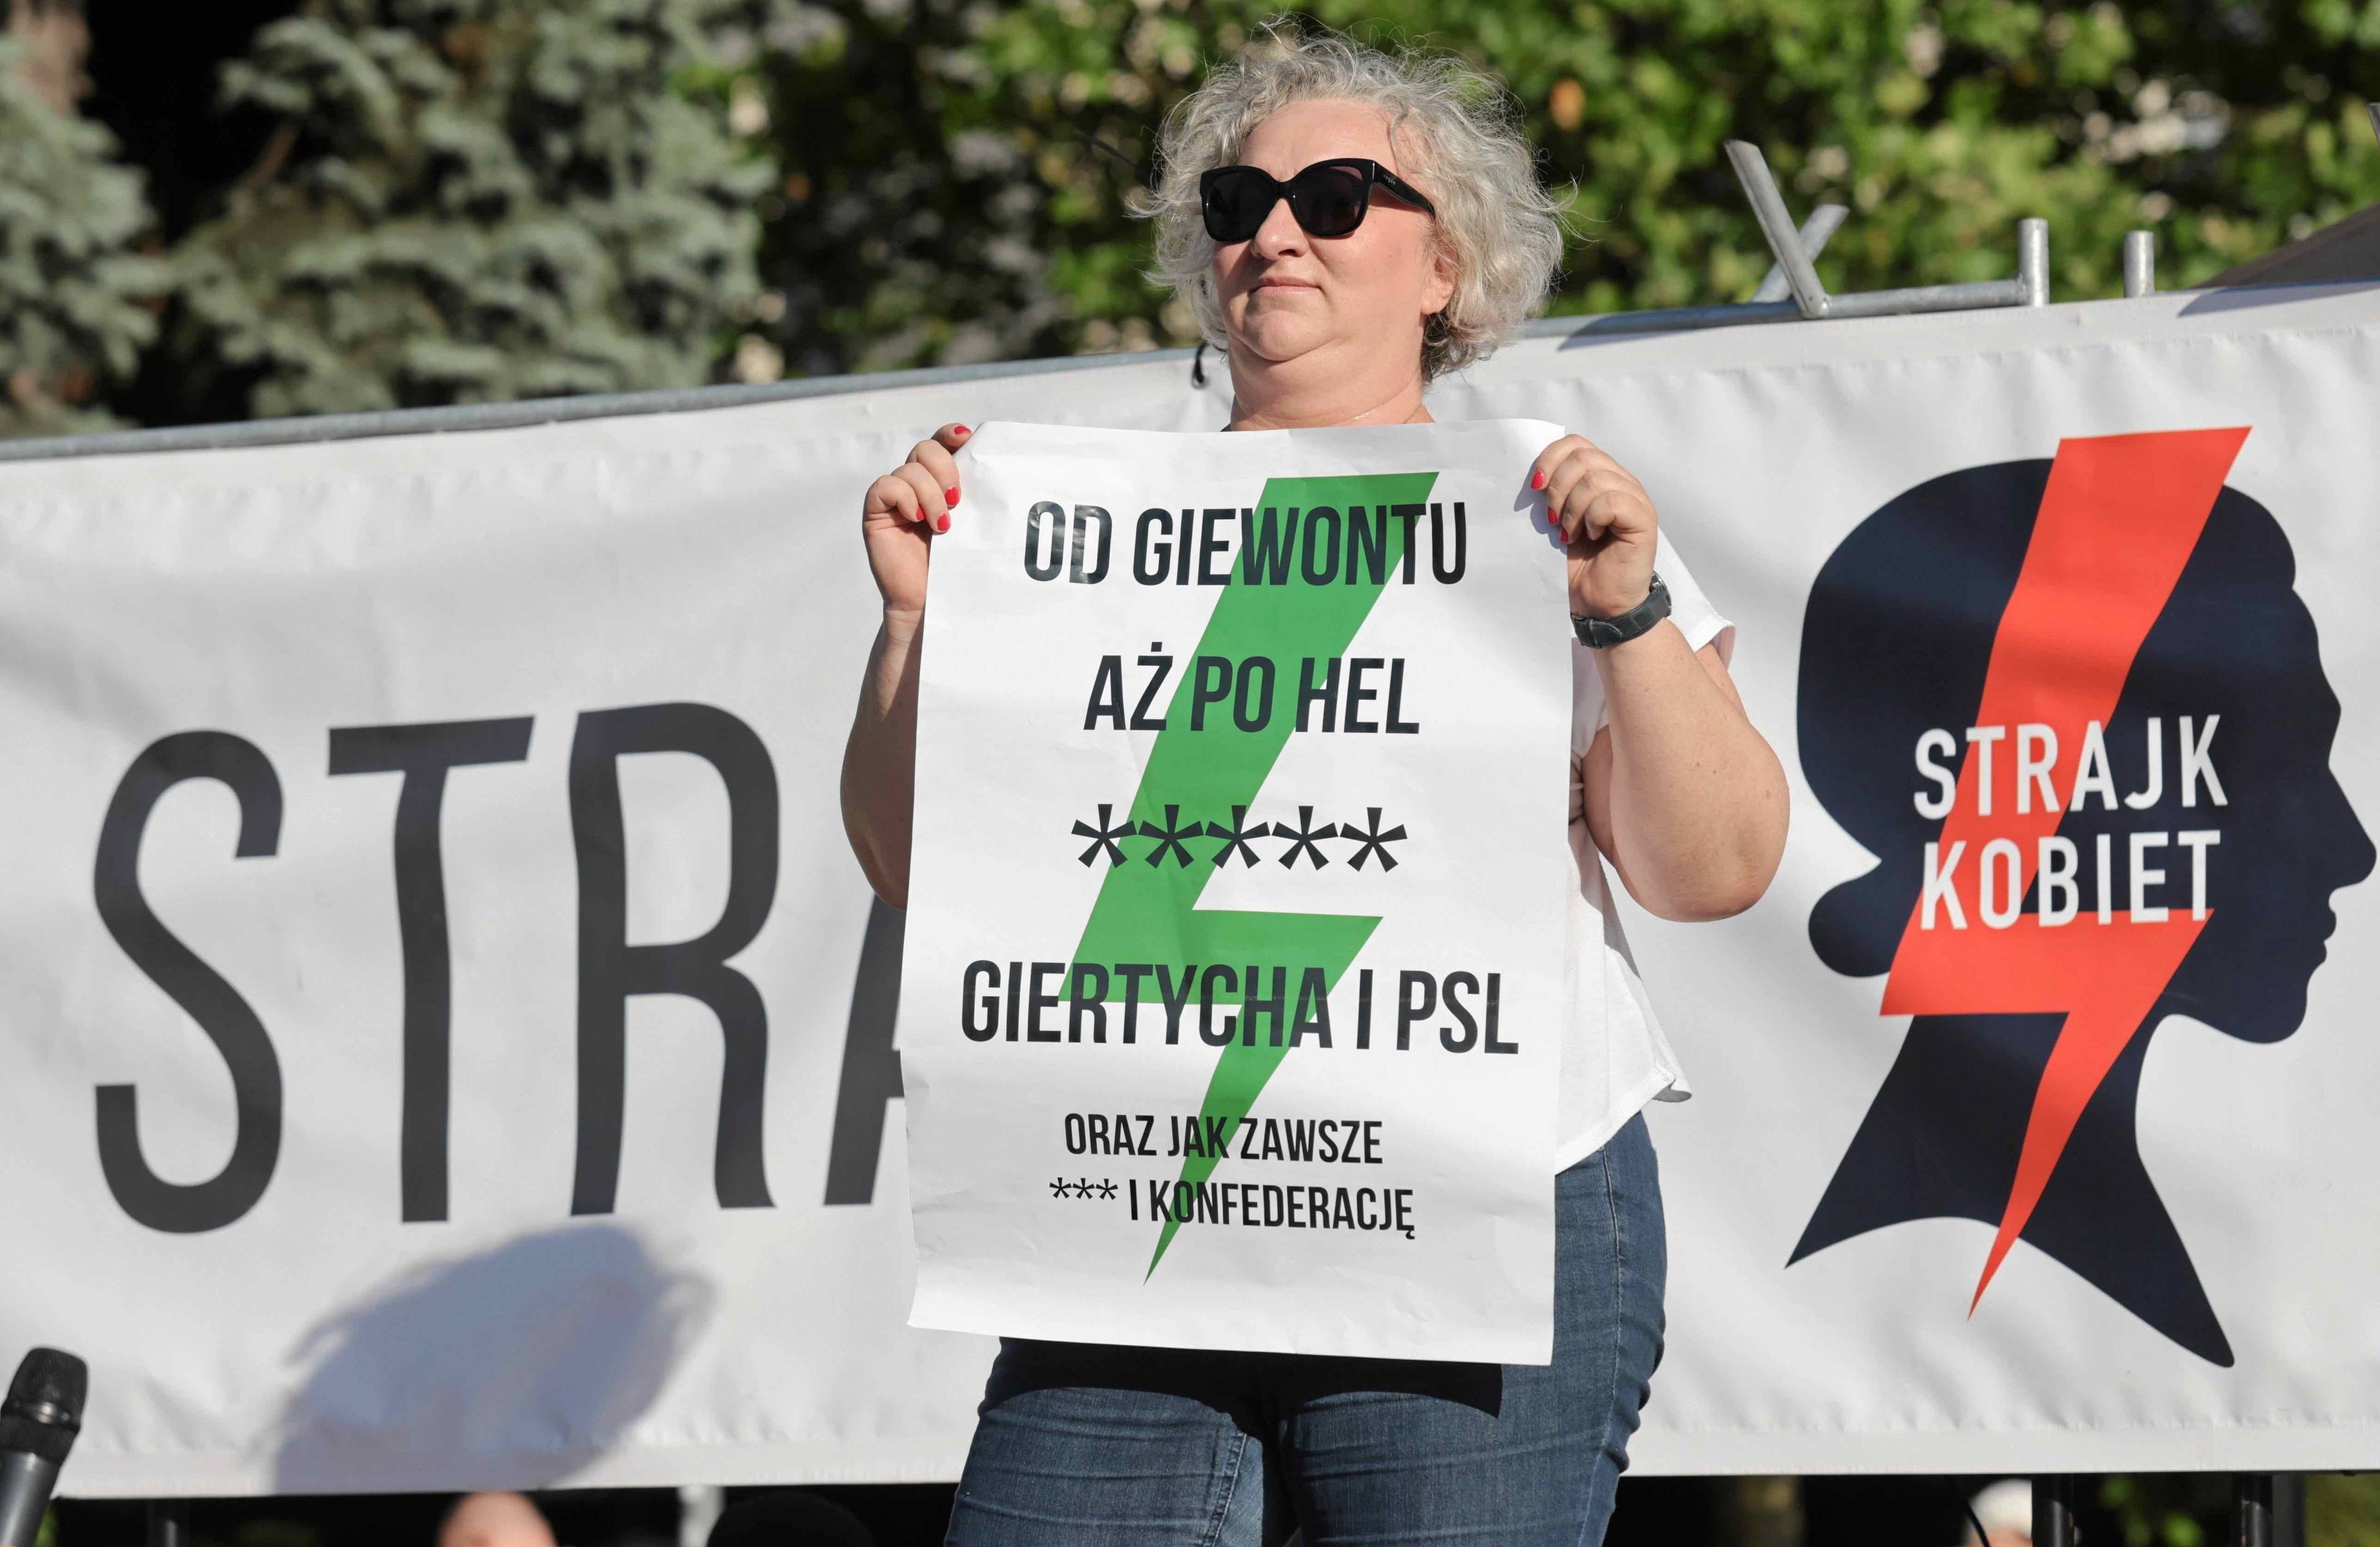 Kobieta stoi na scenie podczas demonstracji trzymając plakat z napisem Od Giewontu aż po Hel [pięć gwiazdek] Giertycha i PSL